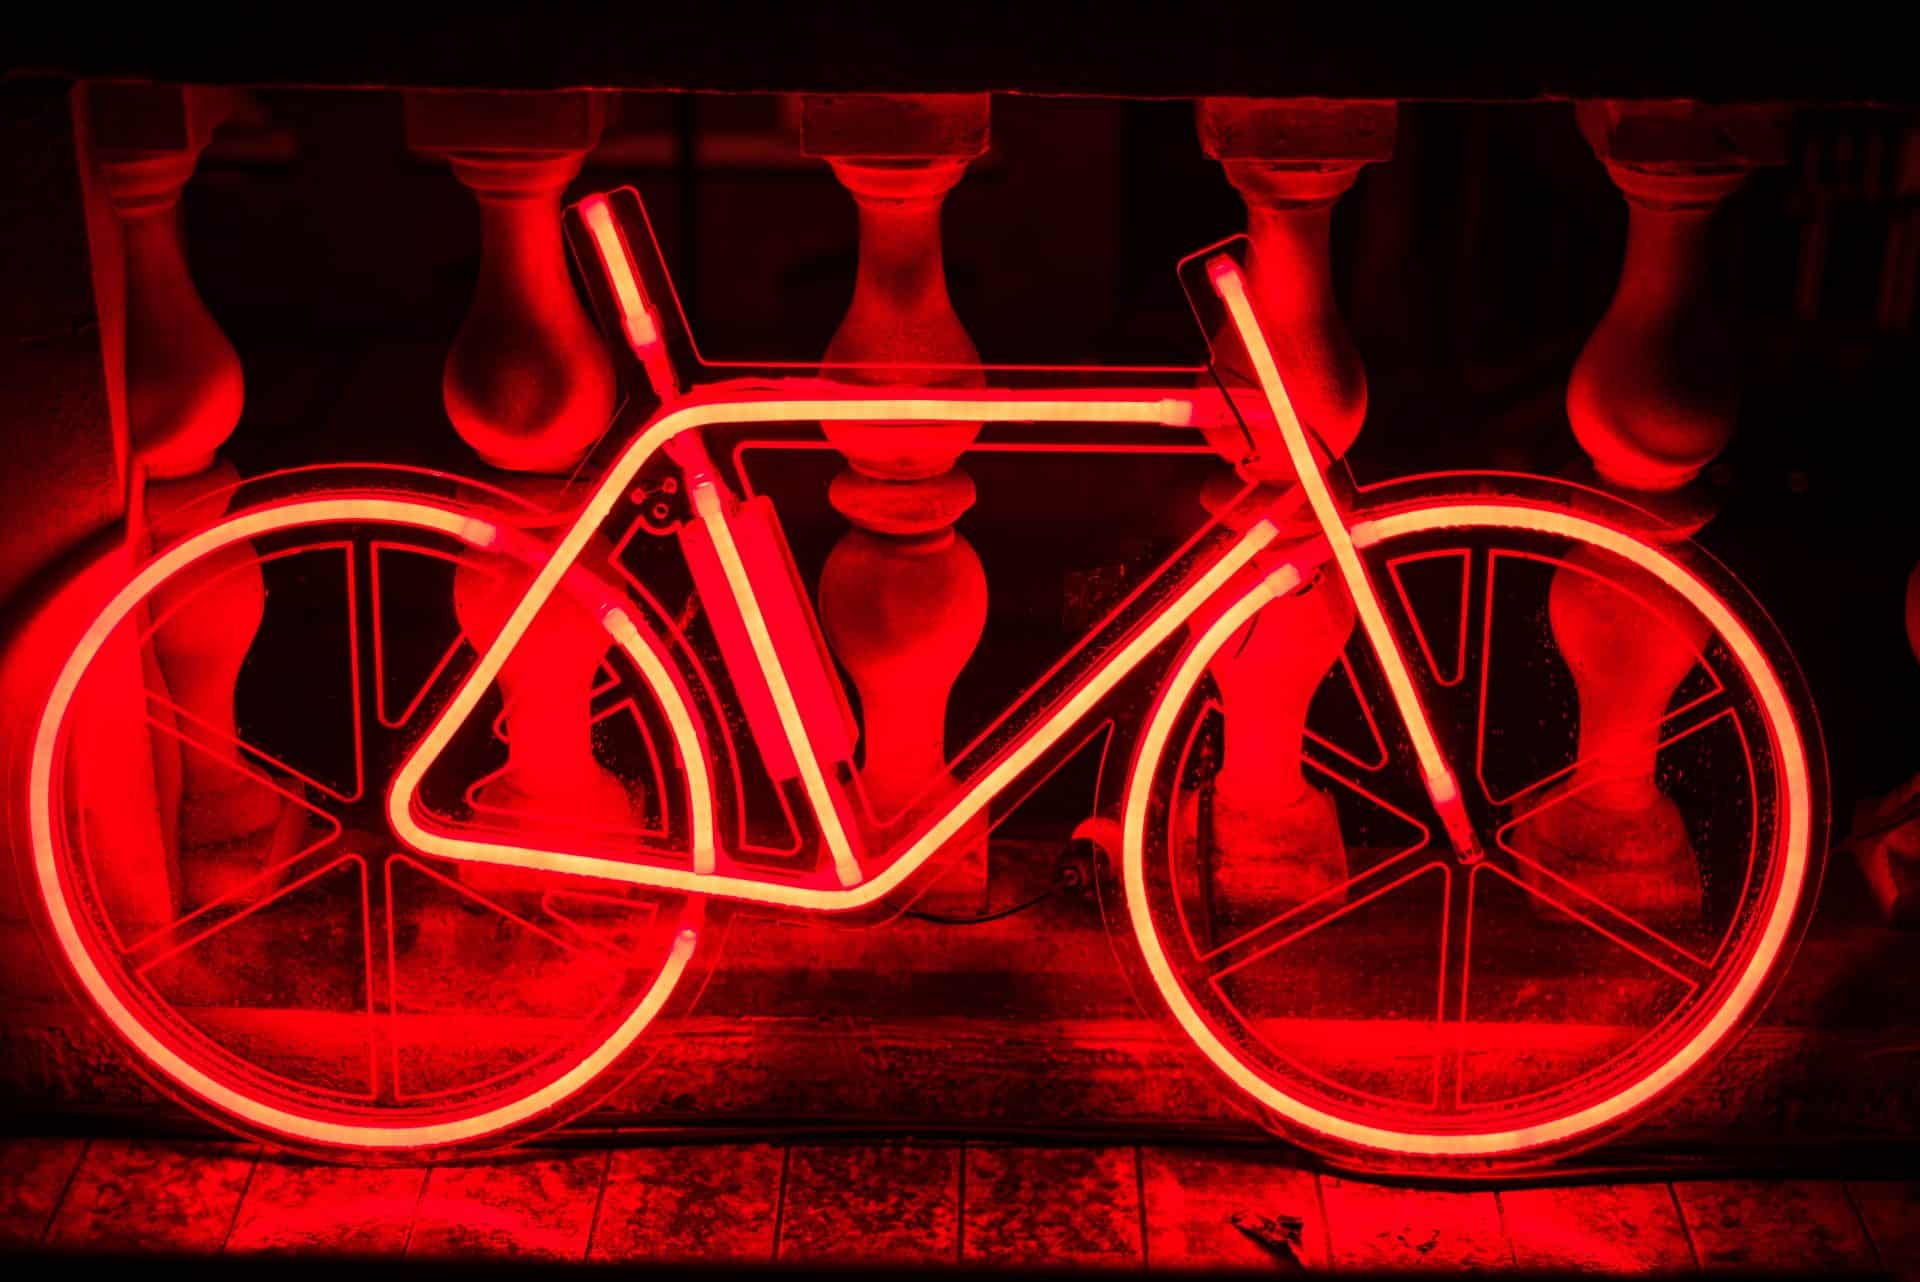 Œuvre d'art en forme de vélo éclairée avec des néons rouges dans la nuit